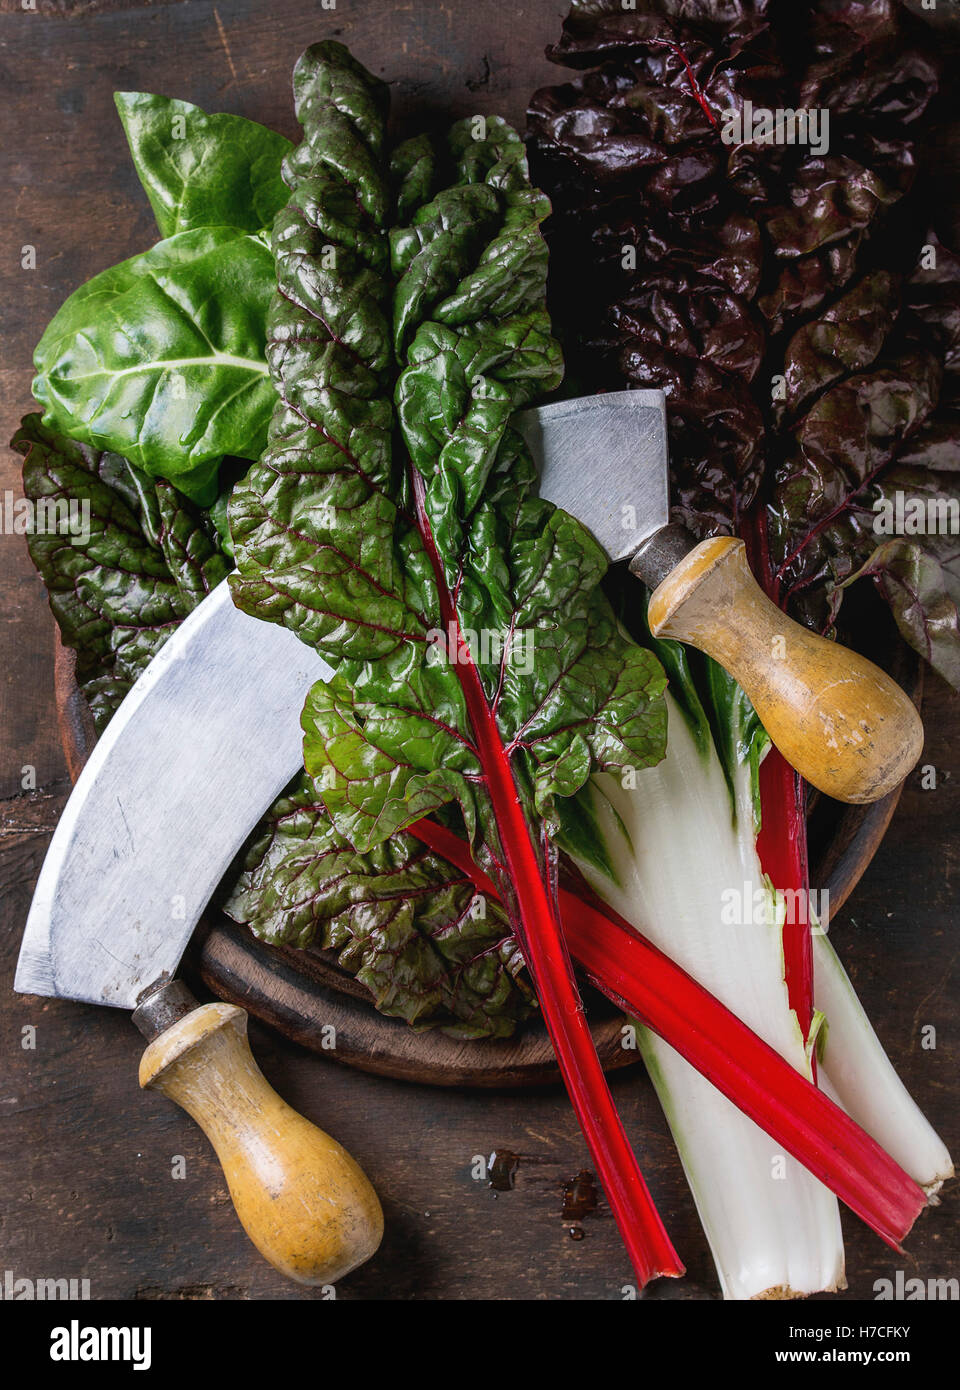 Varietà di bietole novelle mangold foglie di insalata woode sul tagliere con coltello vintage su un vecchio legno scuro dello sfondo. Vista superiore Foto Stock